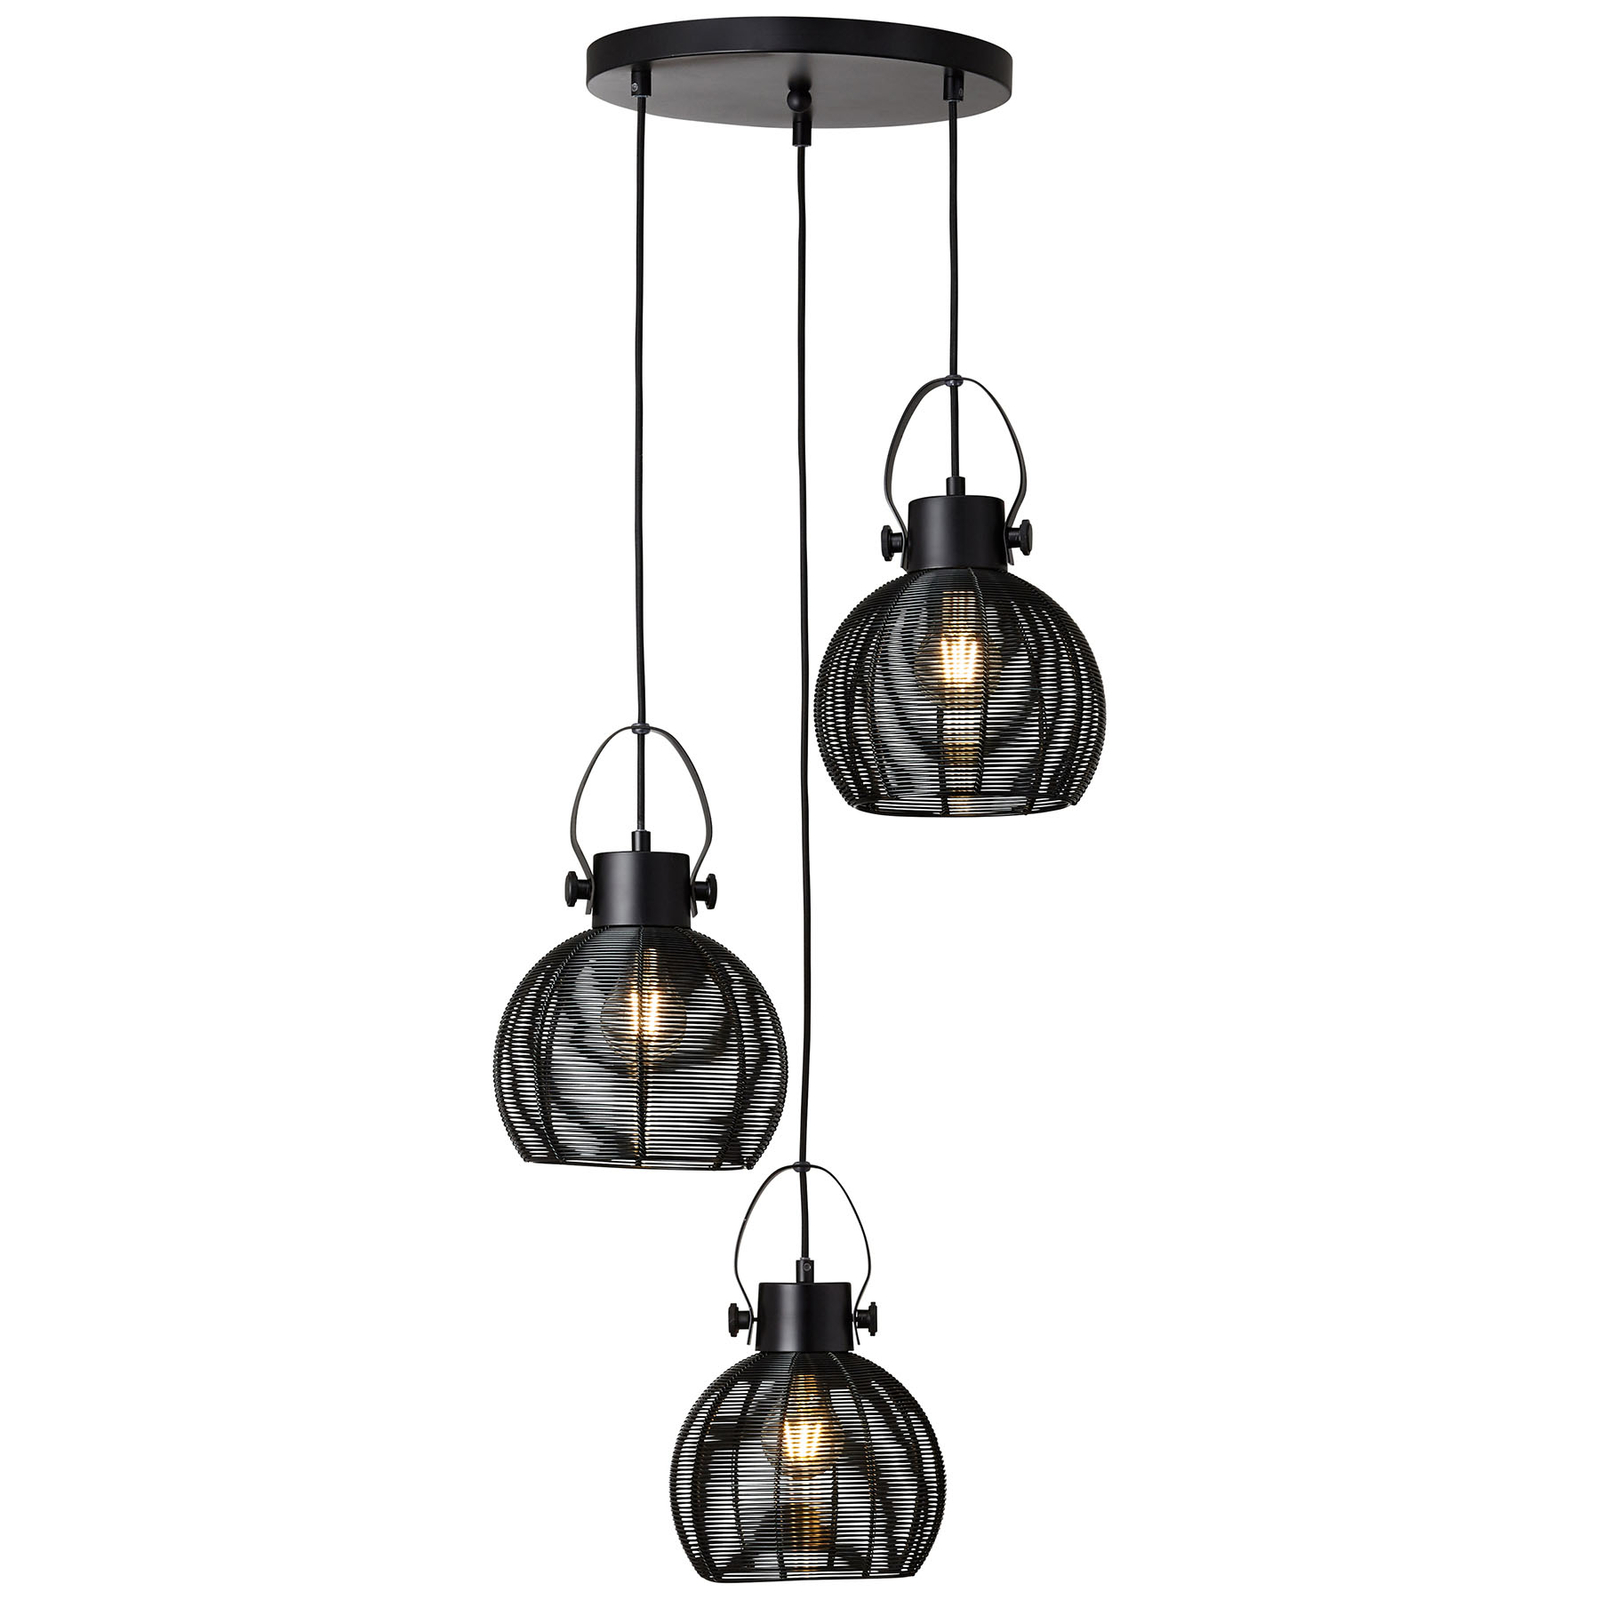 Sambo hanging light, round base, 3-bulb, black